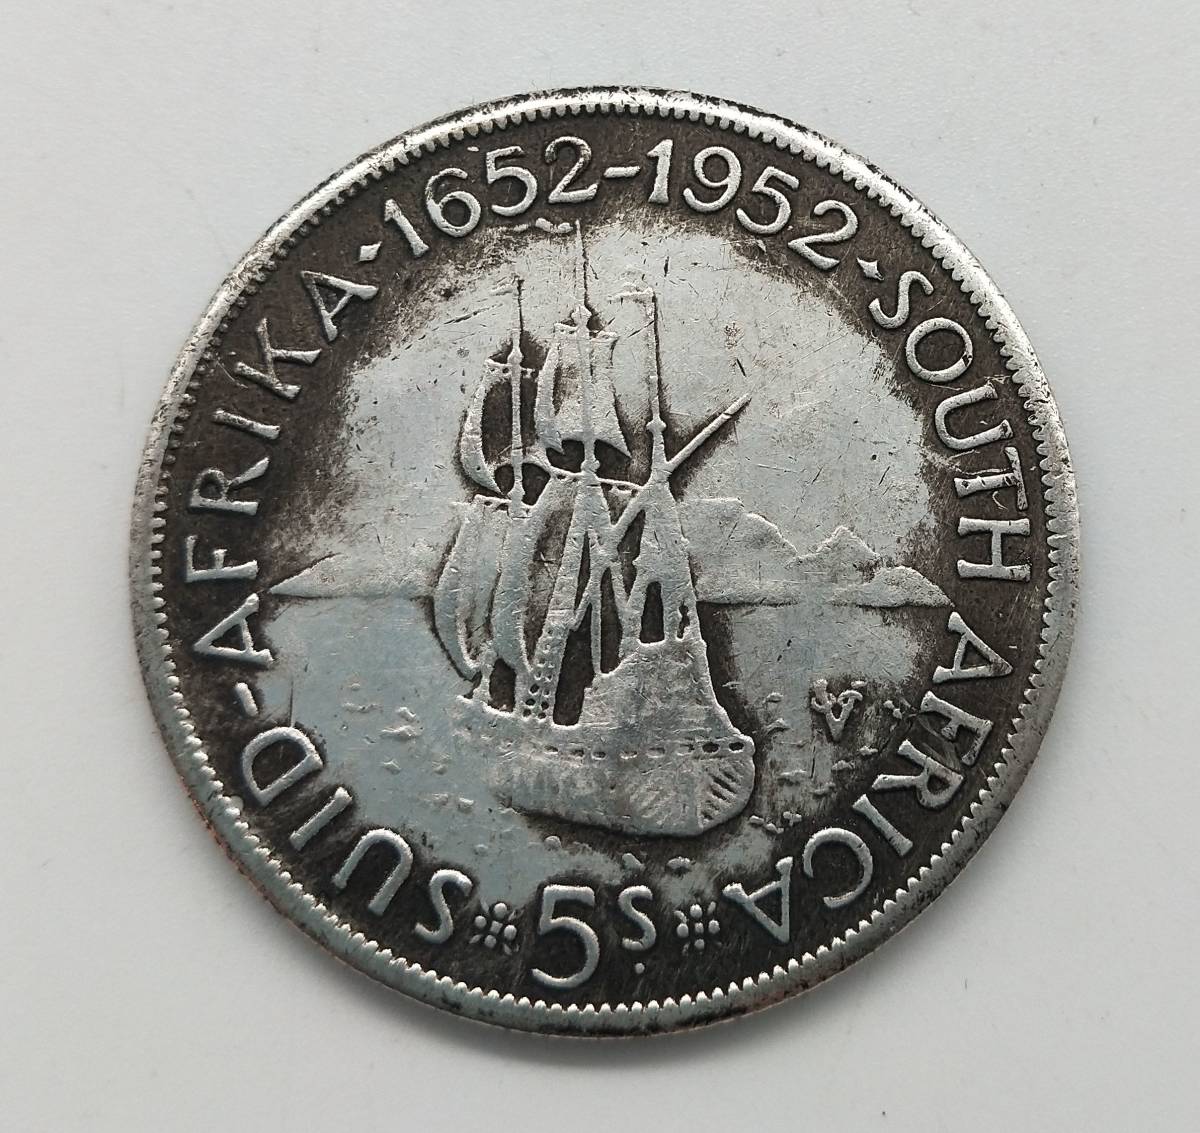  原文: 外国の古銭 大型銀貨 1652-1952　銀餅　貨幣 直径38mm 重さ21.6g